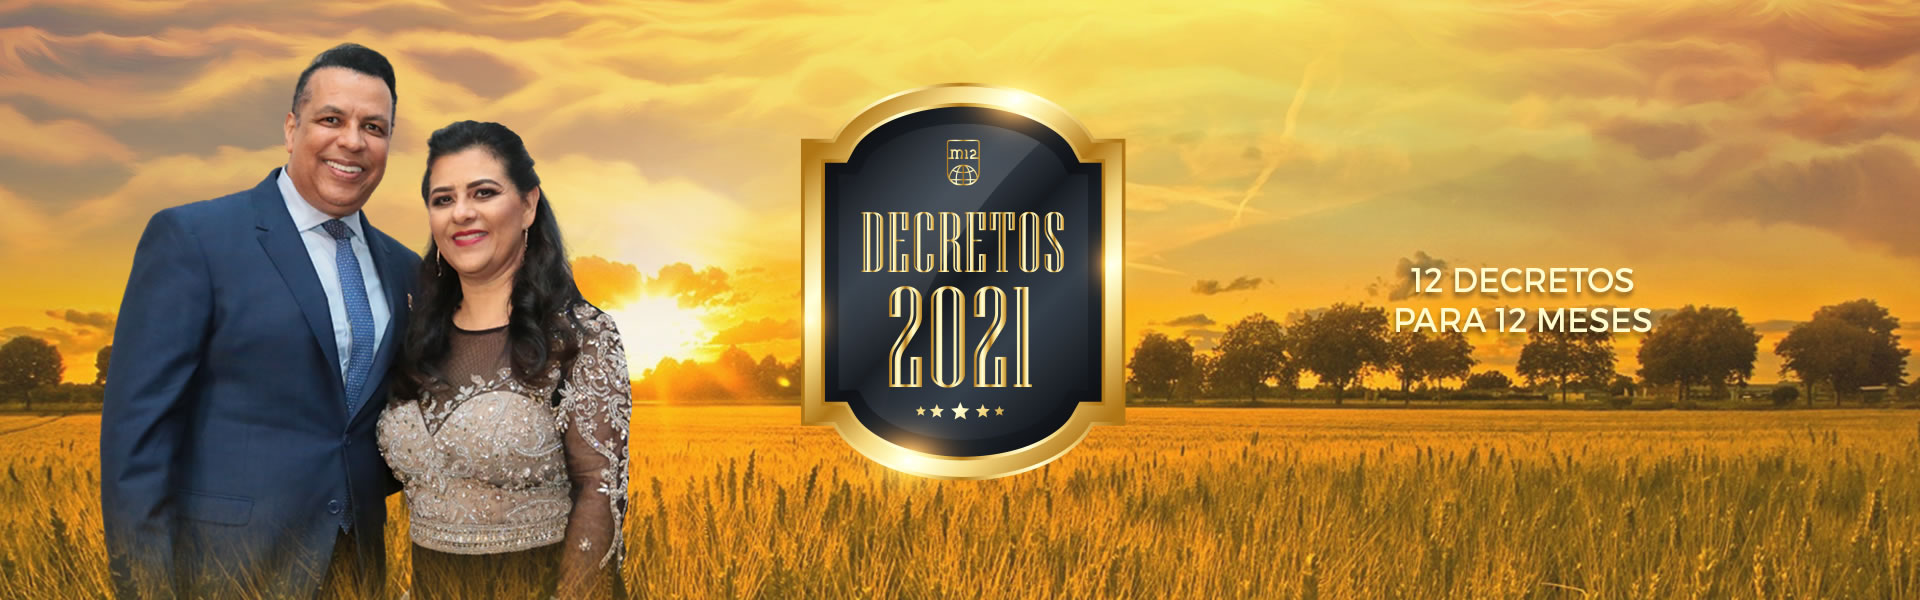 dest210100-decretos